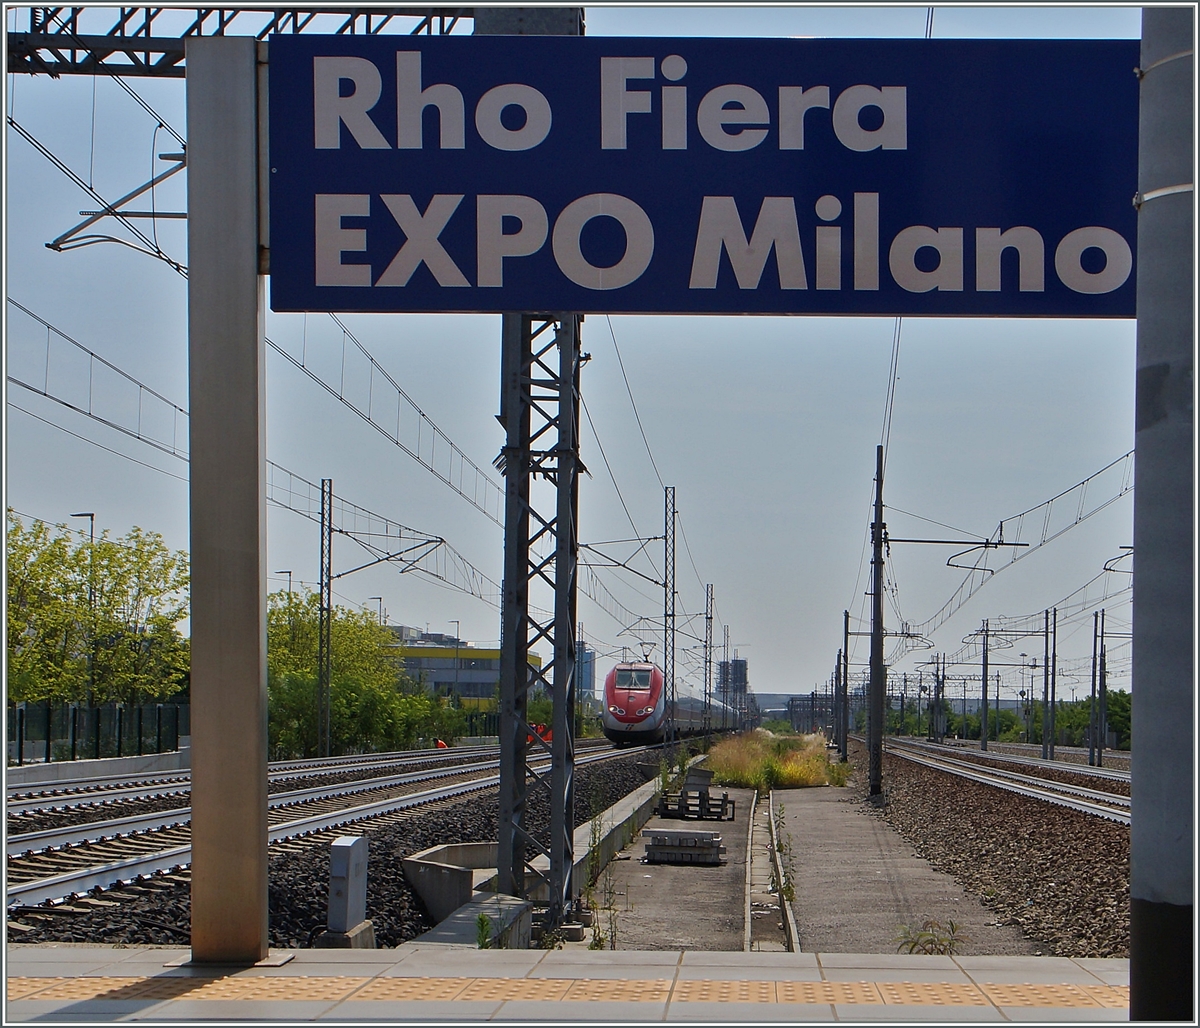 Ein FS ETR 500 erreicht den EXPO Bahnhof Rhoo Fiera EXPO Milano.
22. Juni 2015